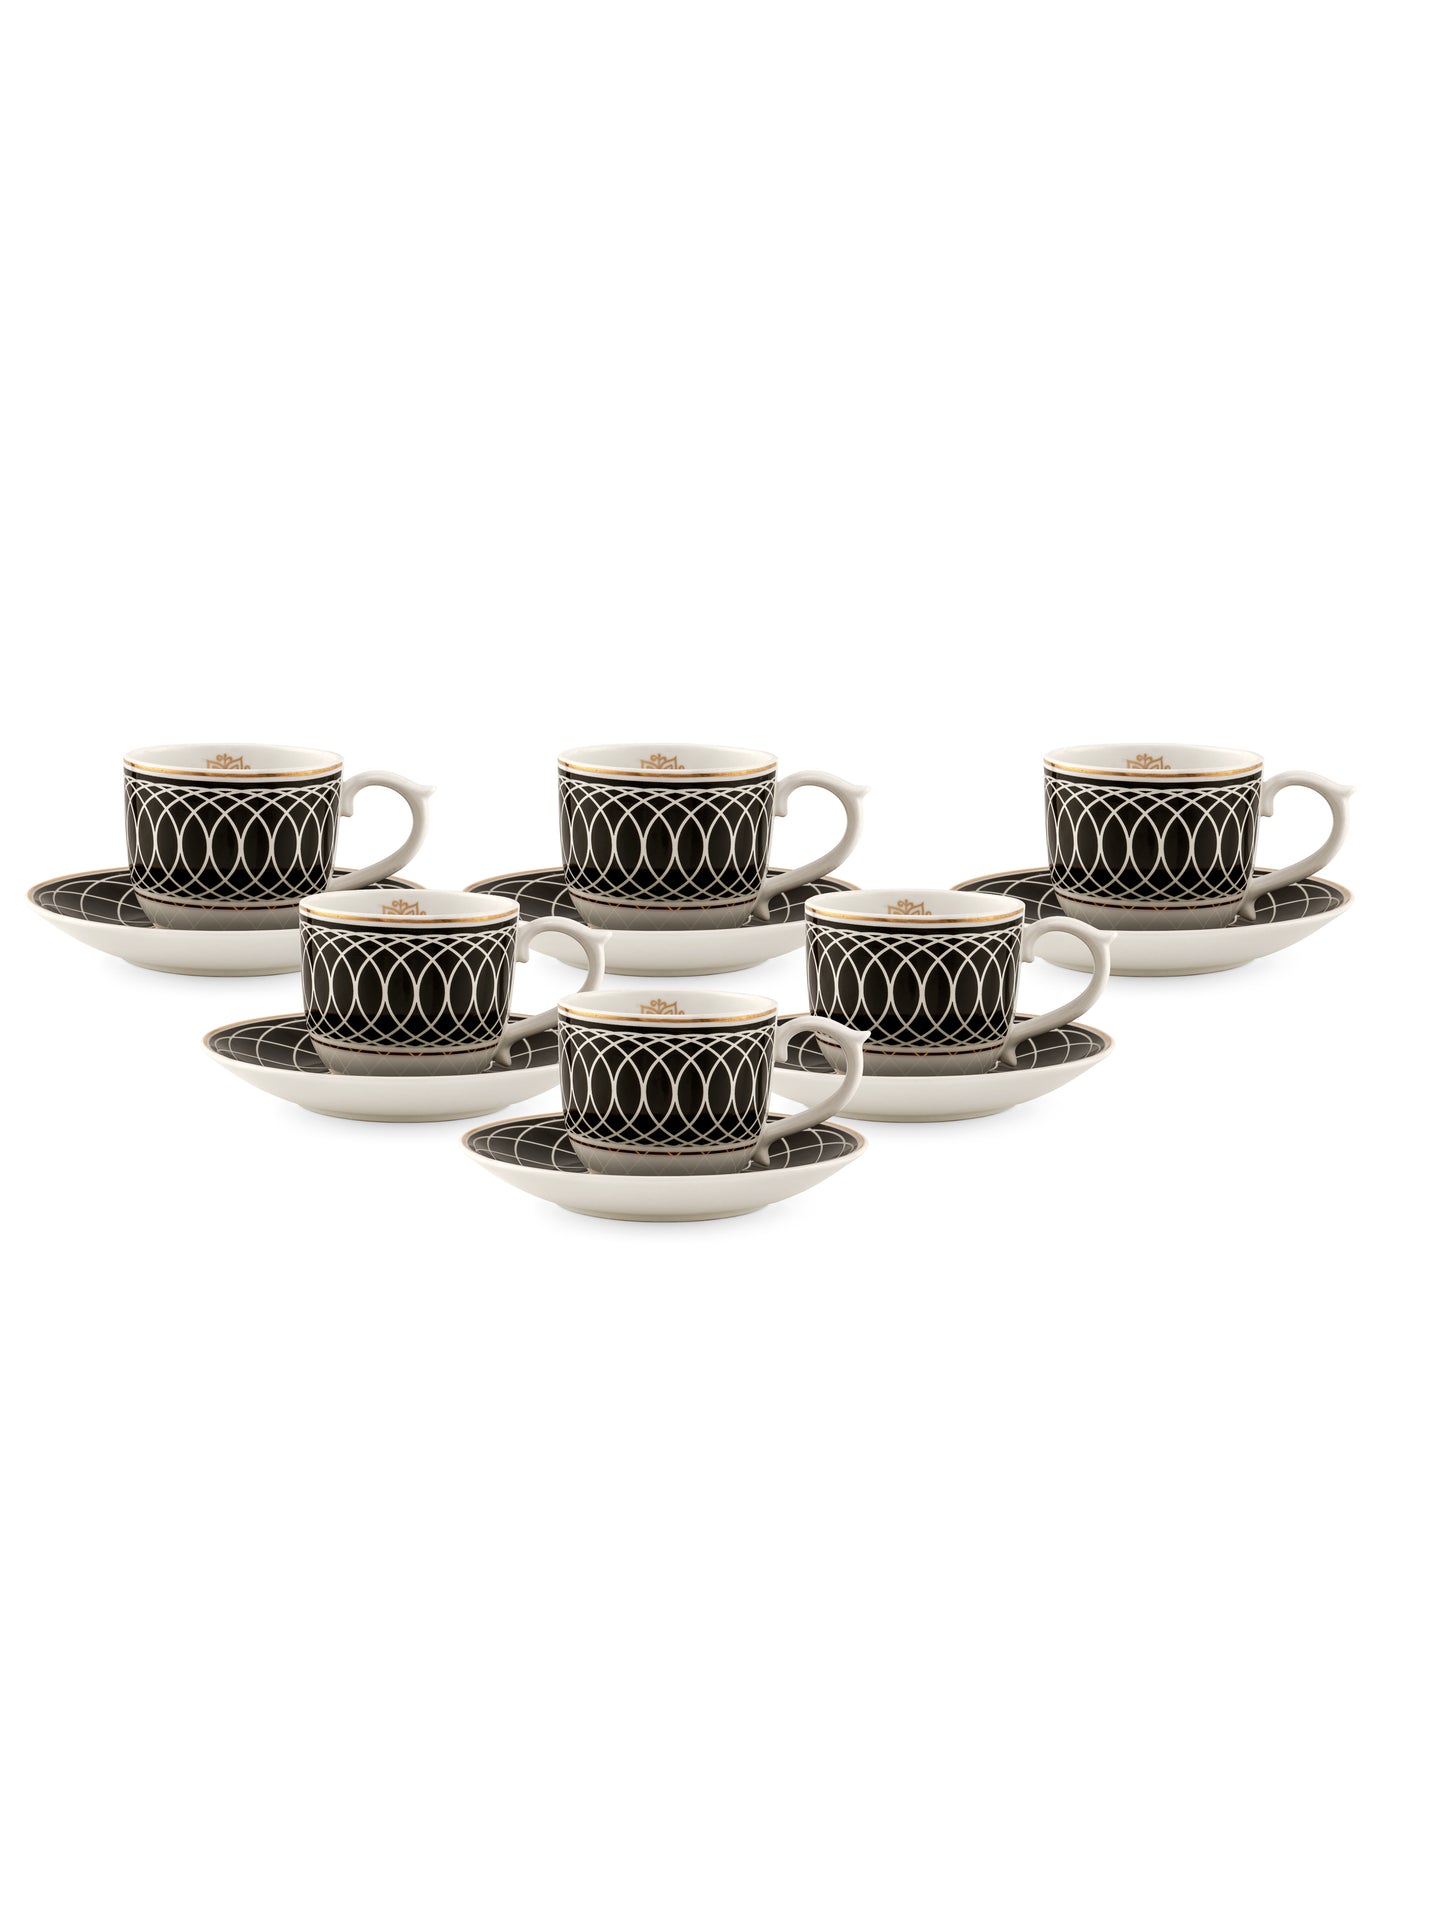 Maharani Noir Cup & Saucer, 160ml, Set of 12 (6 Cups + 6 Saucers) (403)